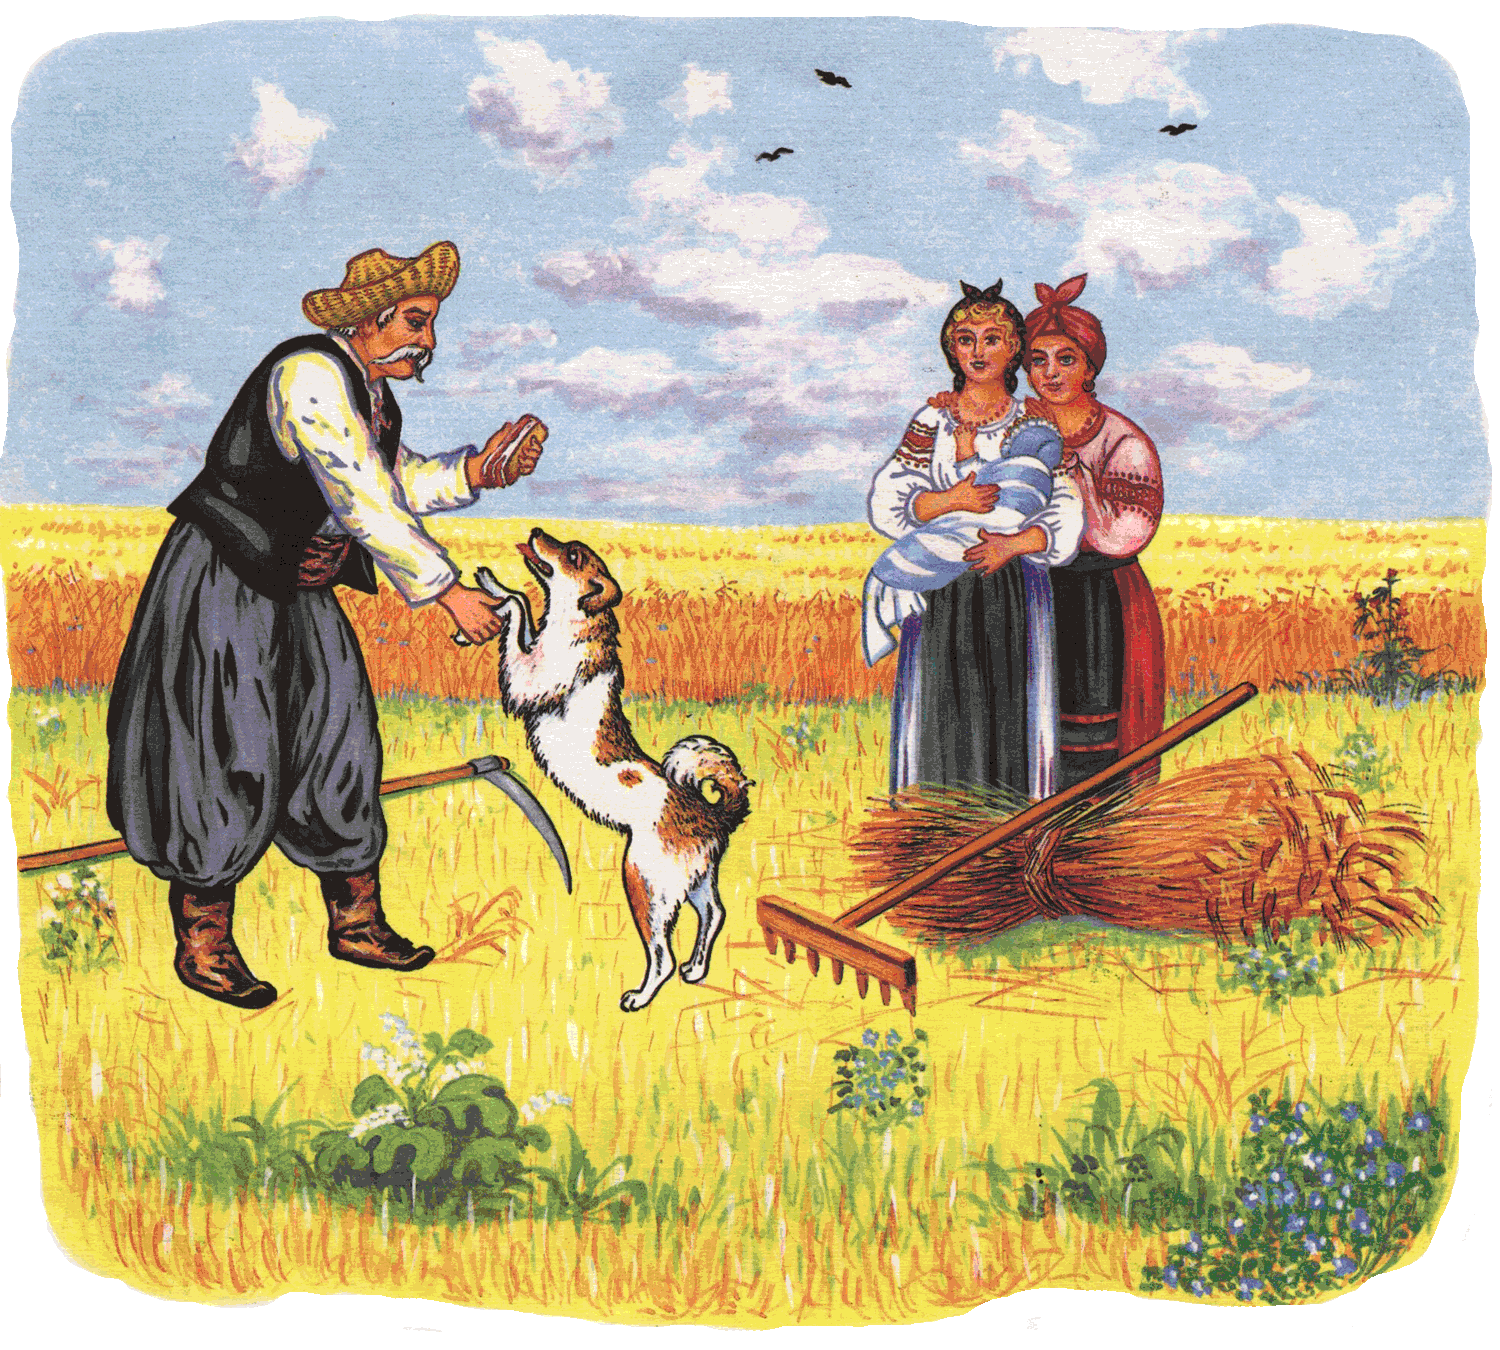 "Жил-был пёс". Украинская народная сказка. Иллюстрации Е. Дидковской.